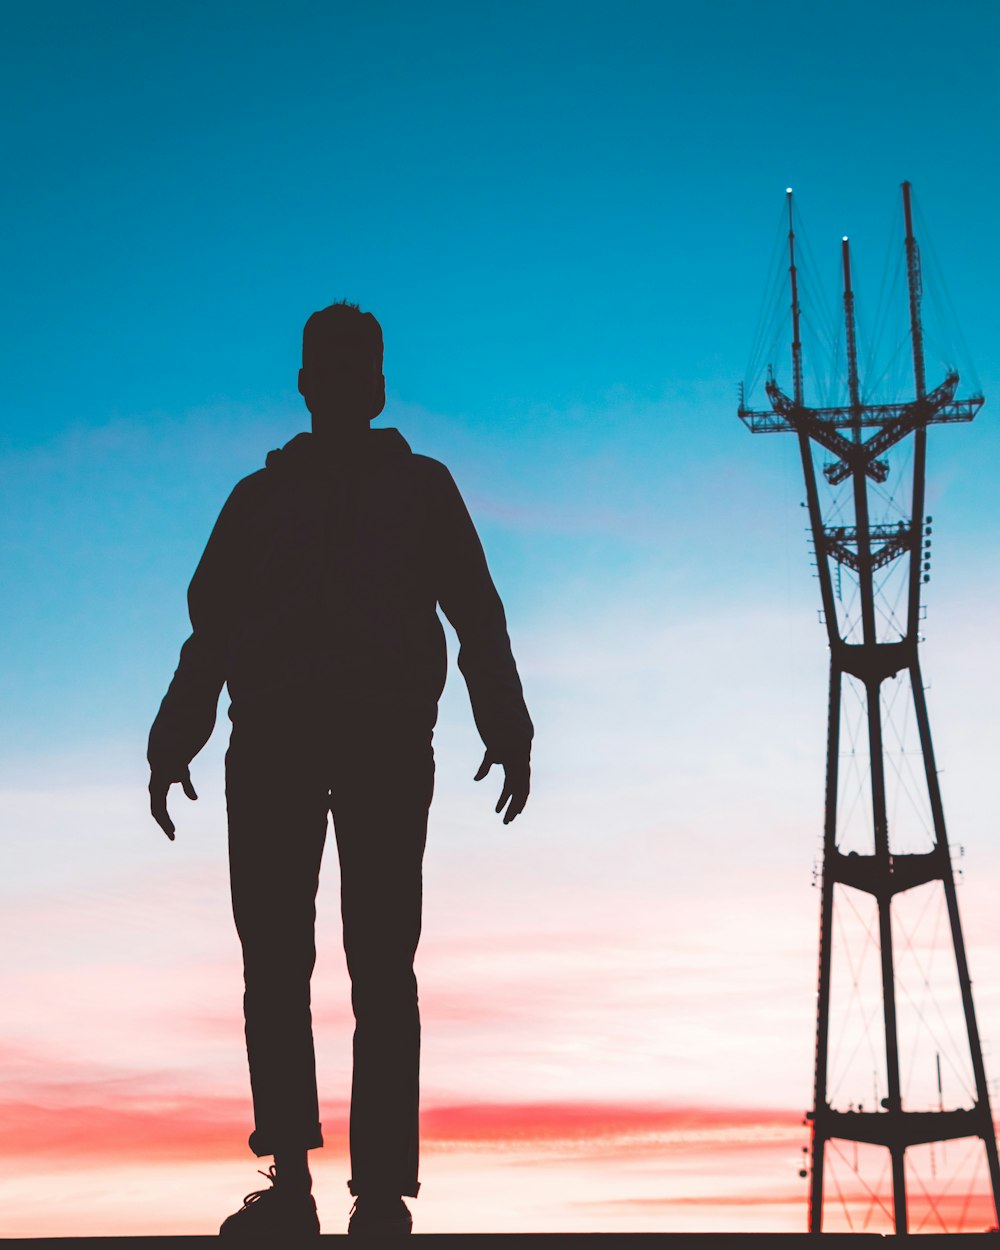 Fotografia da silhueta do homem em pé na frente da torre de transmissão